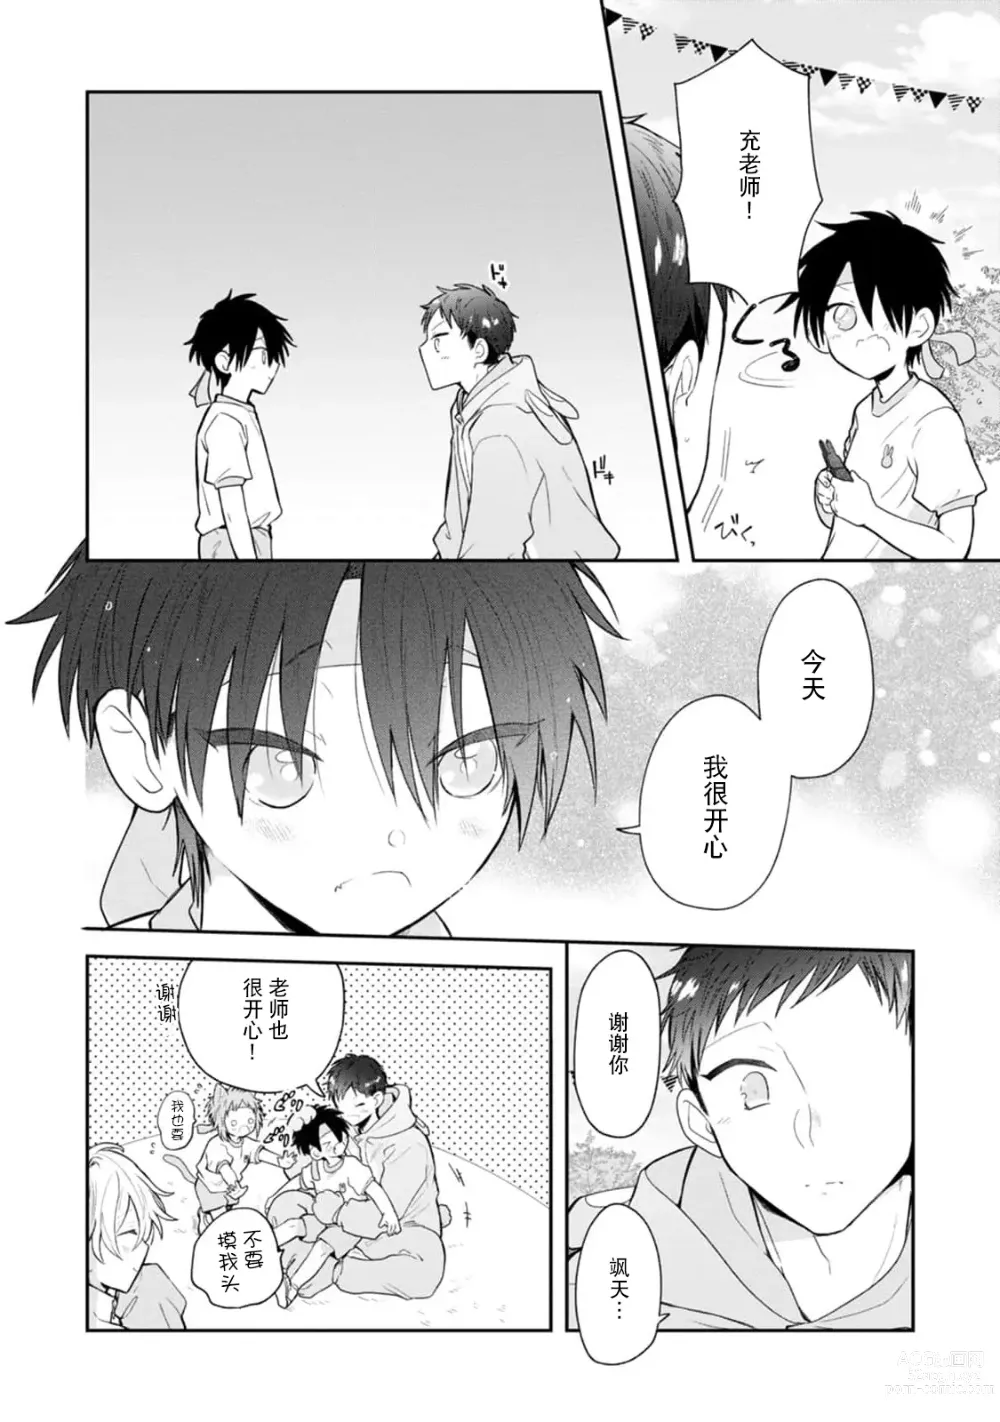 Page 136 of manga 叶羽老师全部是第一次 1-4